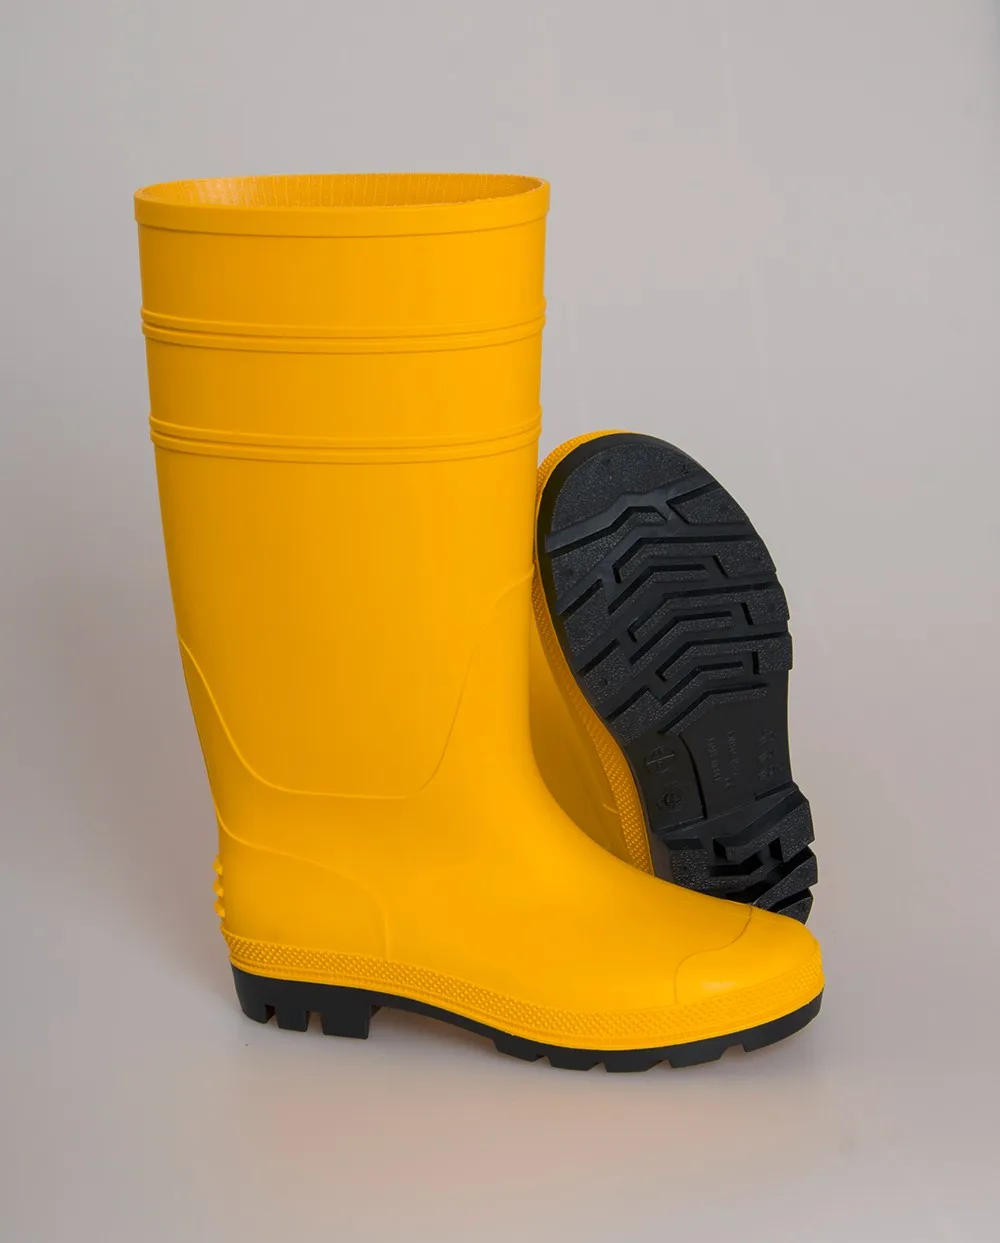 防水pvc 高胶靴,安全塑料雨靴,工作场所的安全靴